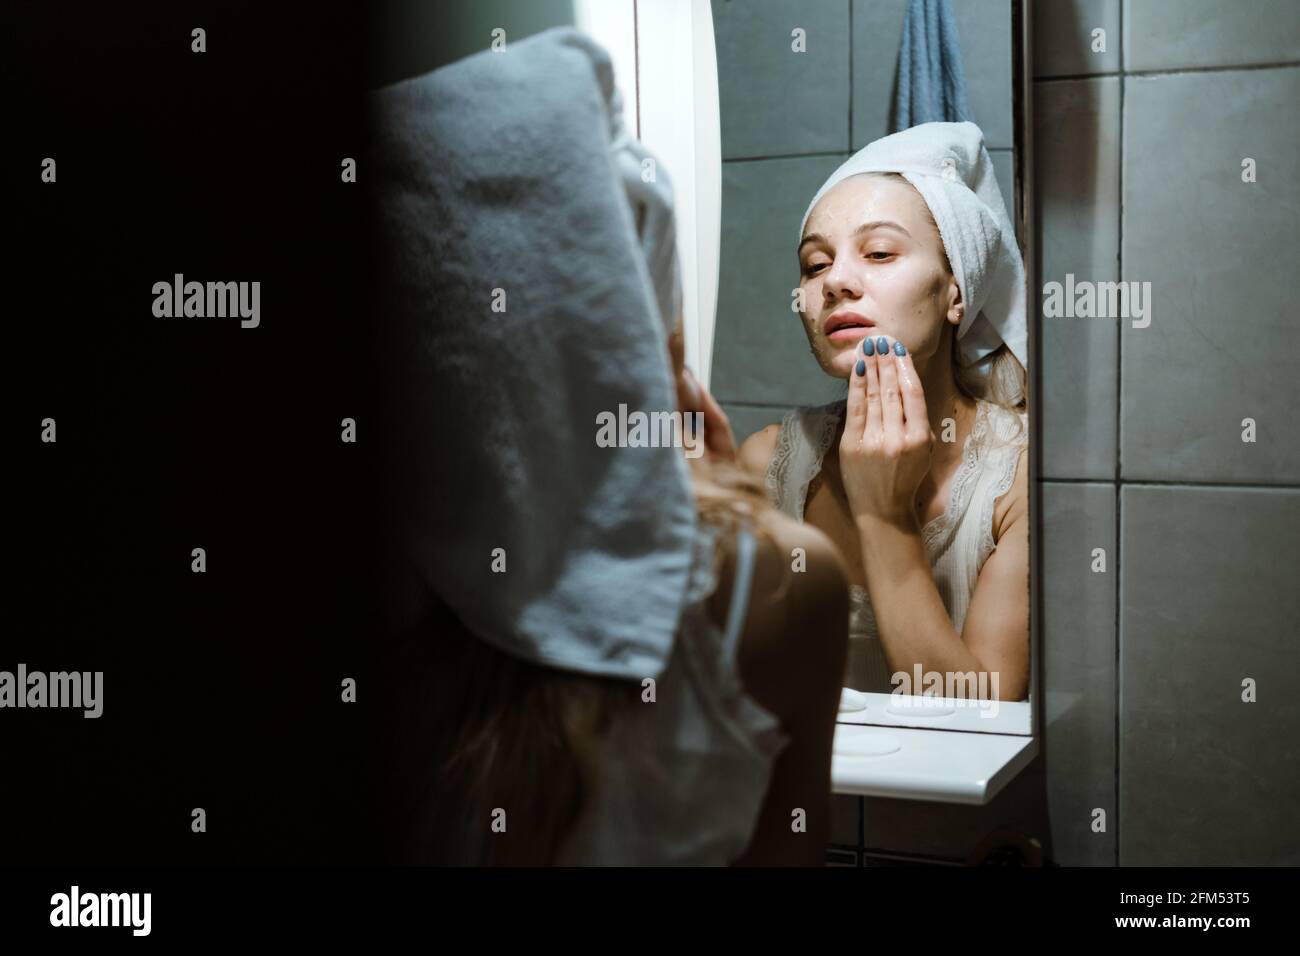 Verwenden Sie Die Gesichtsmaske Zum Abwaschen, Und Verwenden Sie Die Maske Zum Abwaschen Korrekt. Junge Frau im Handtuch auf ihrem Kopf Gesicht waschen, nachdem sie die Maske im Badezimmer entfernt. Stockfoto